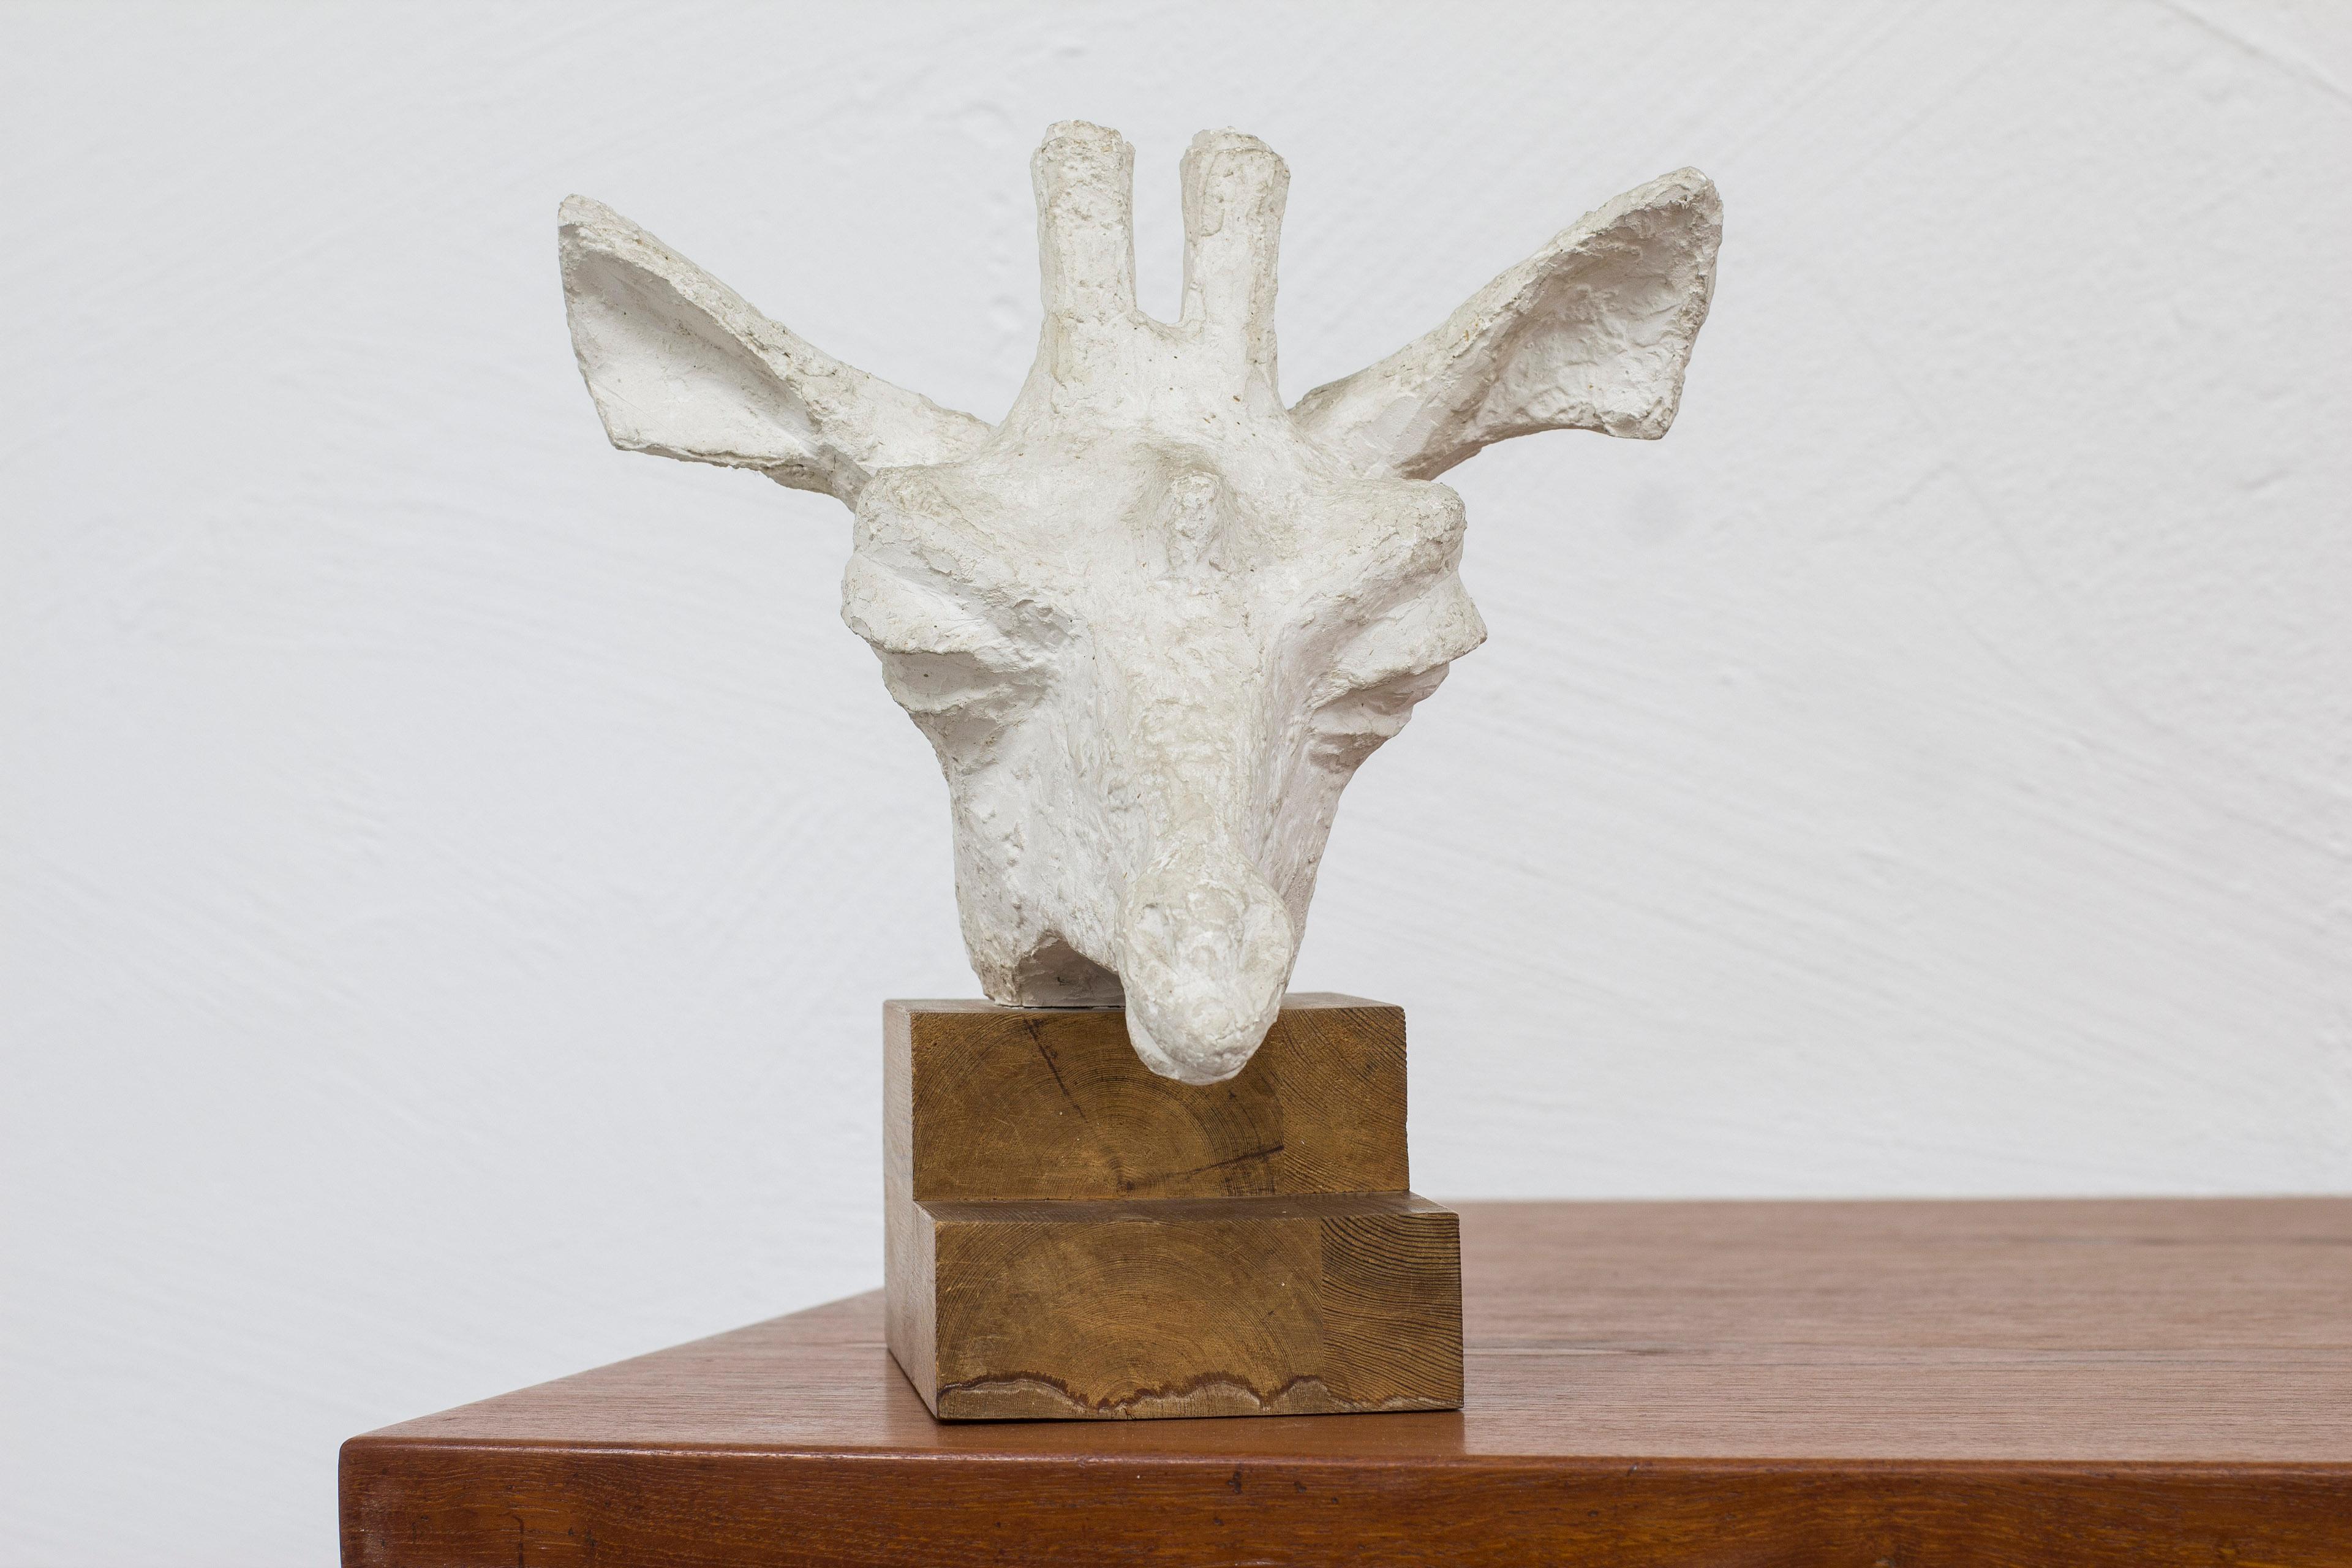 Sculpture ancienne de l'artiste suédois Asmund Arle. Fabriqué en Suède en 1949. Représentation d'une tête de girafe. Plâtre et pin. Signé A. Arle, 1949. Bon état avec une patine liée à l'âge.

Asmun Arle (1918-1990), né à Malmö en Suède, est un